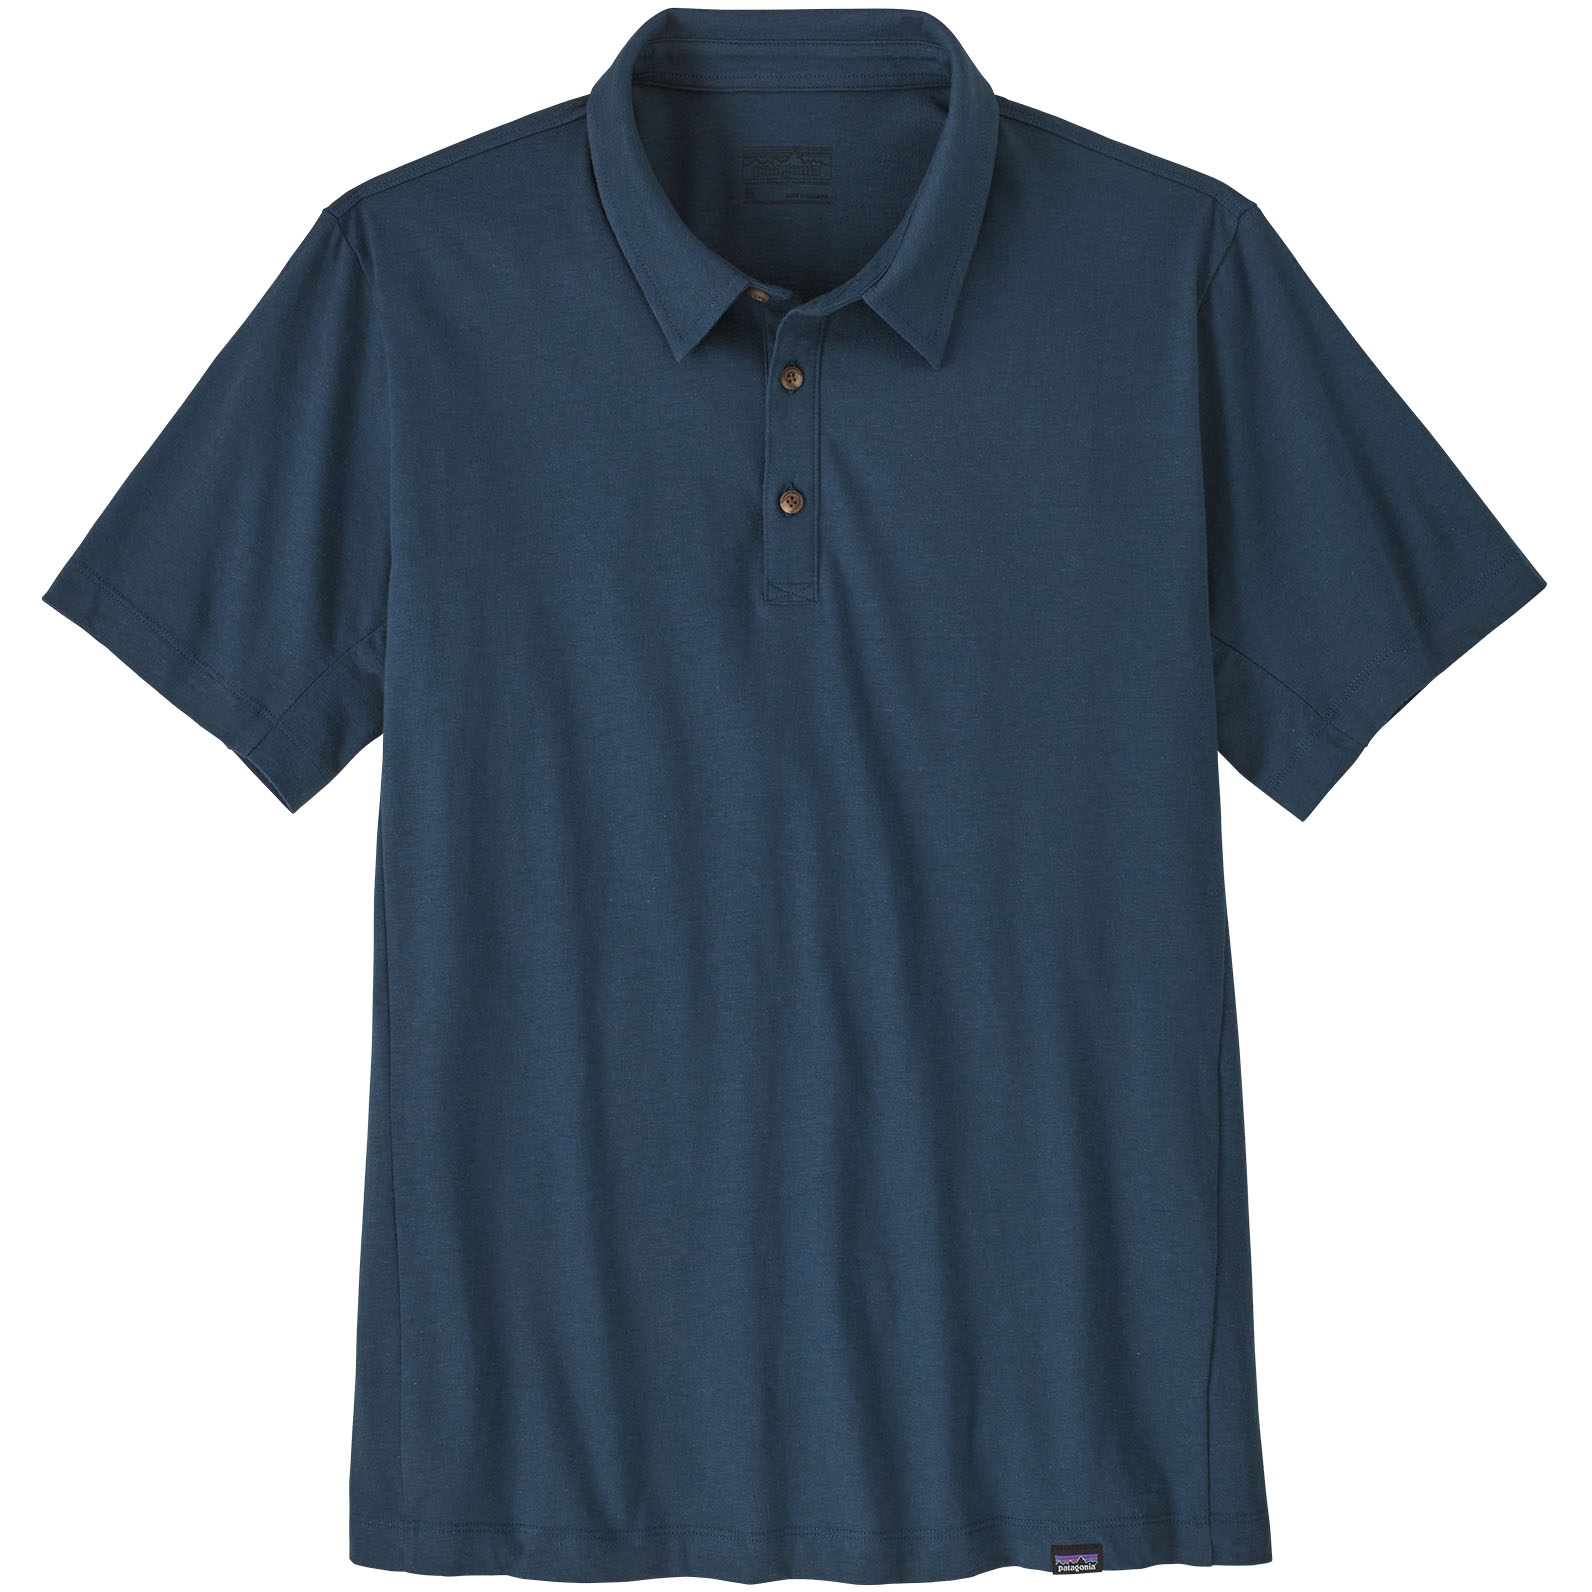 Produktbild von Patagonia Essential Polo-Shirt Herren - Tidepool Blue